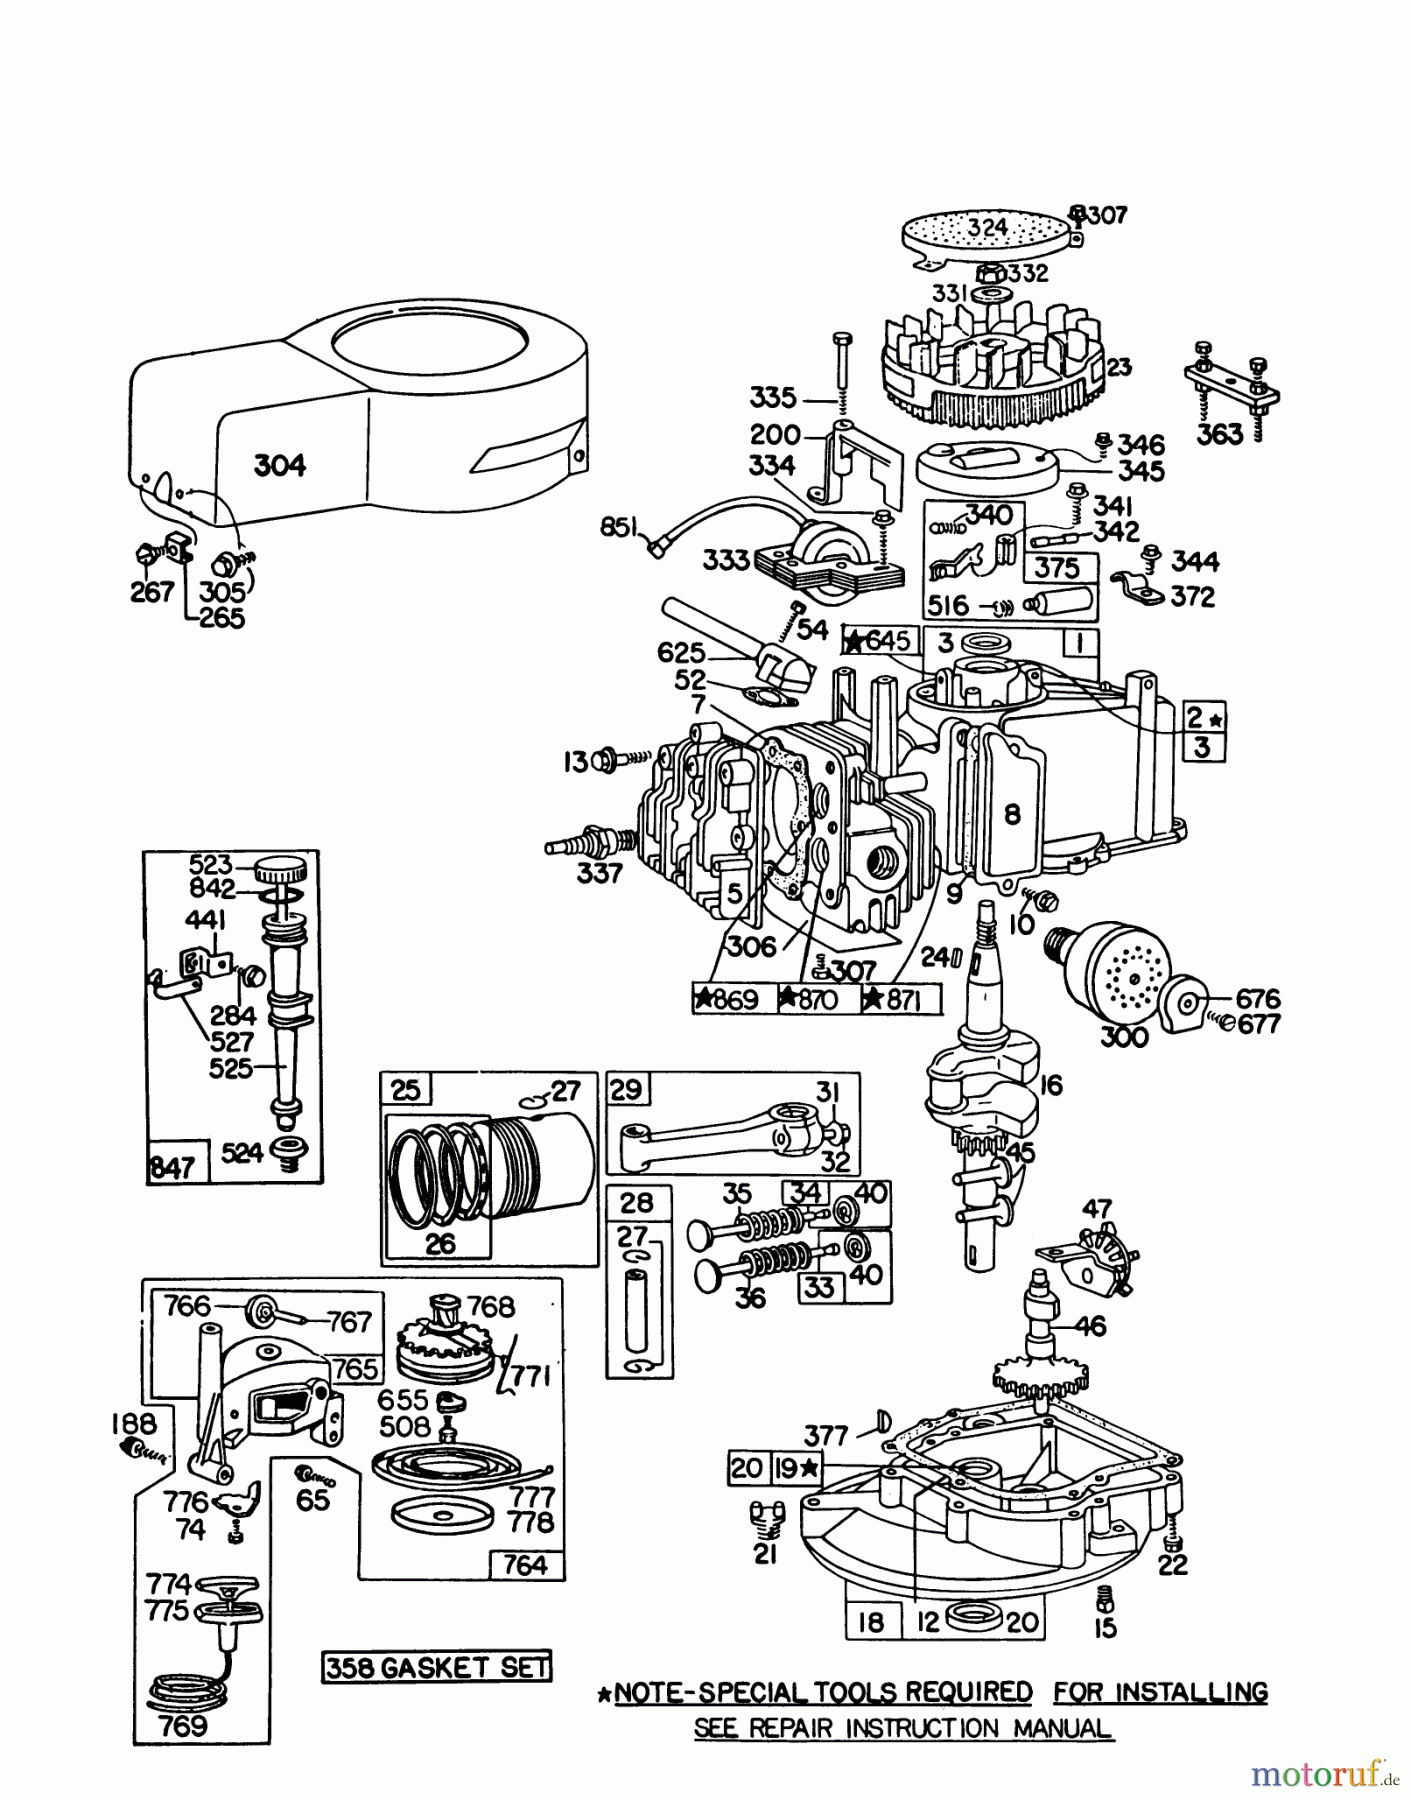  Toro Neu Mowers, Walk-Behind Seite 1 16310 - Toro Lawnmower, 1979 (9000001-9999999) ENGINE BRIGGS & STRATTON MODEL 92908-1842-02 FOR 21